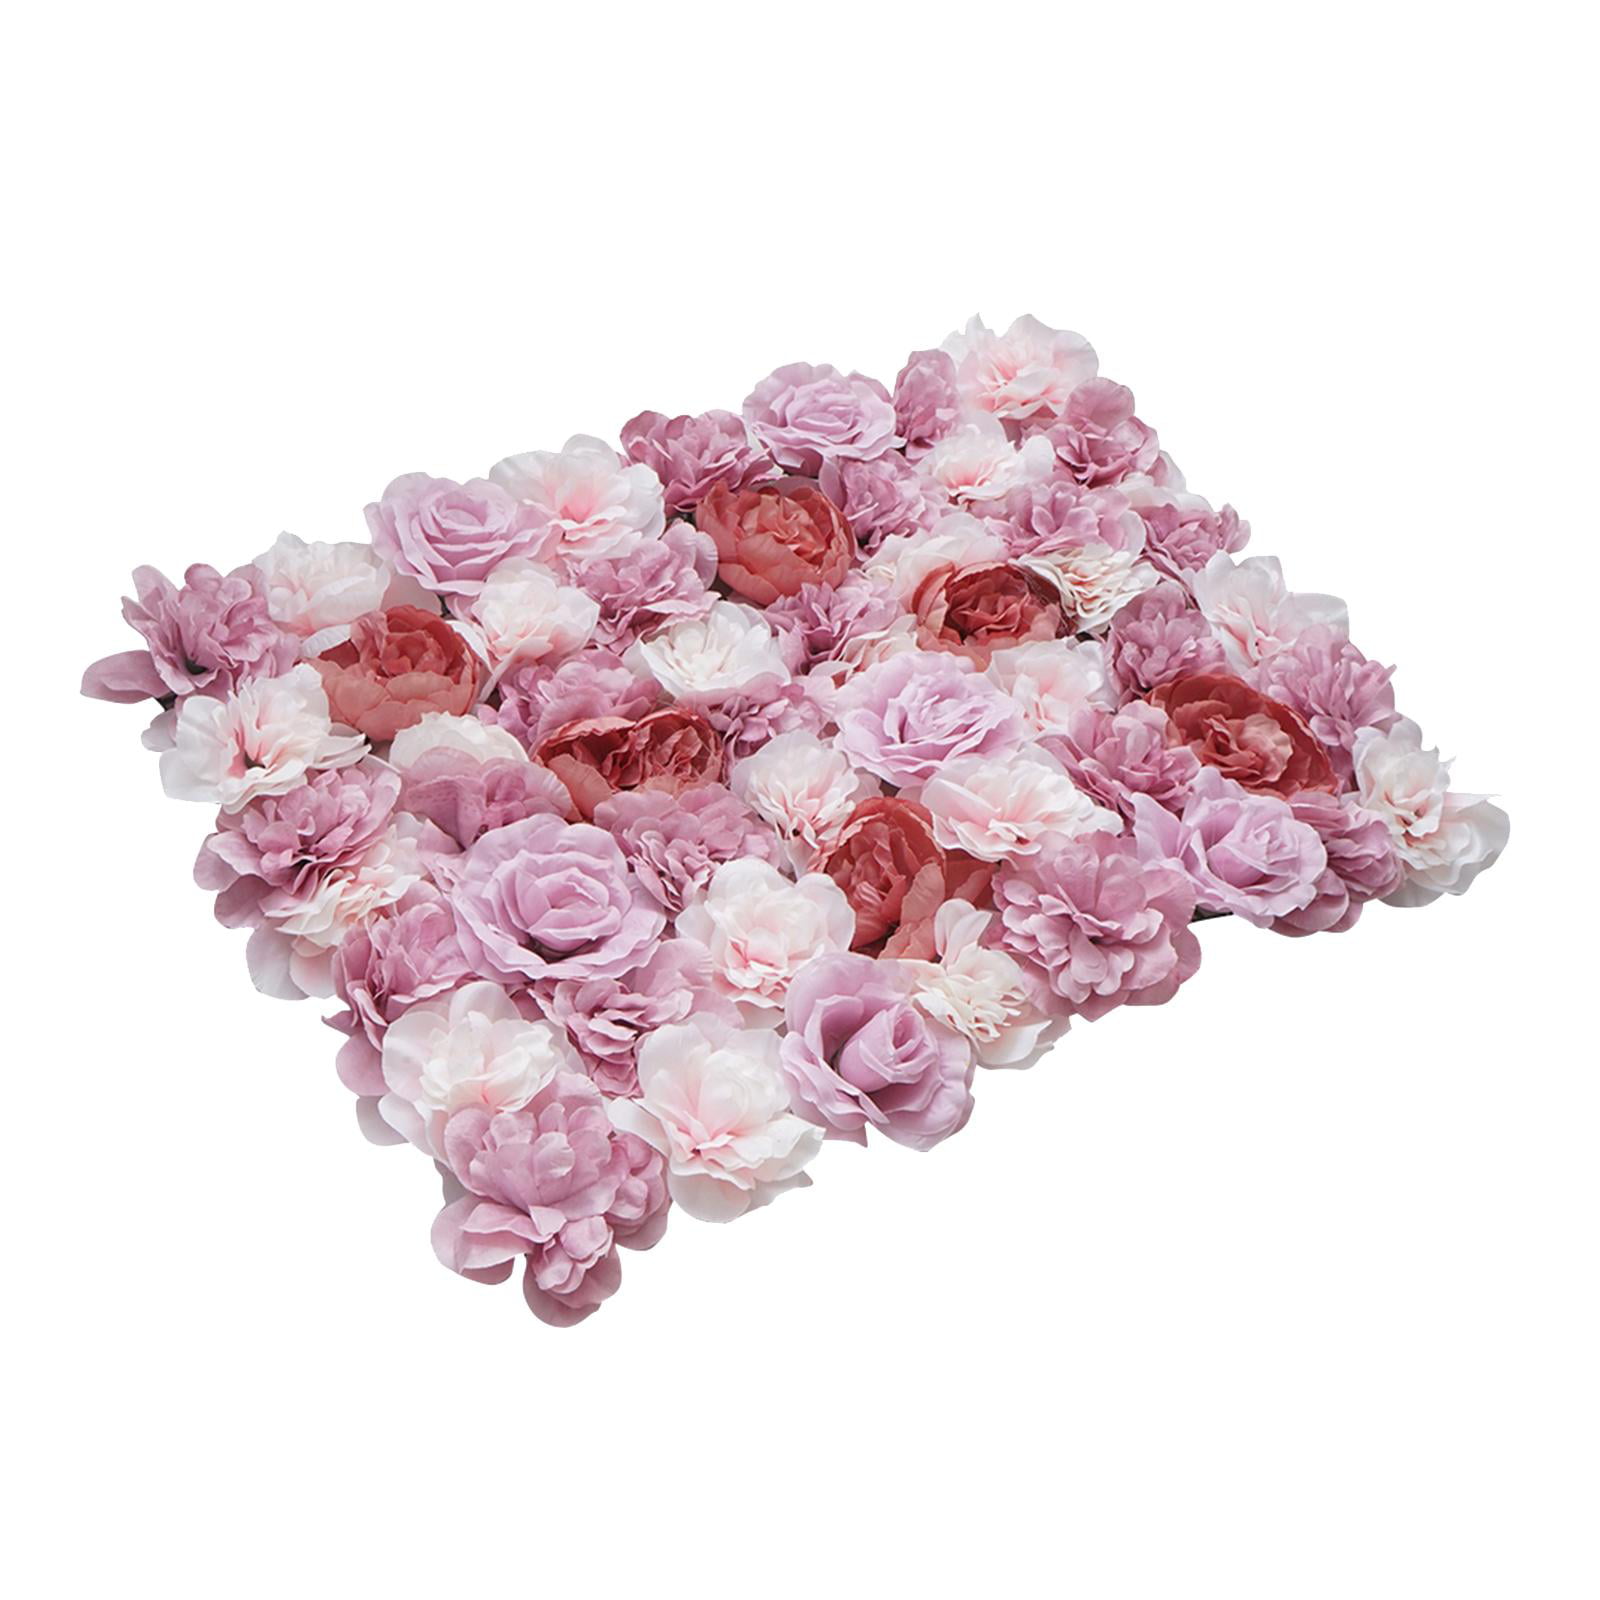 2x Cream Hydrangea Flower Wall Wedding Backdrop Party Venue Decoration 40 x 60cm 